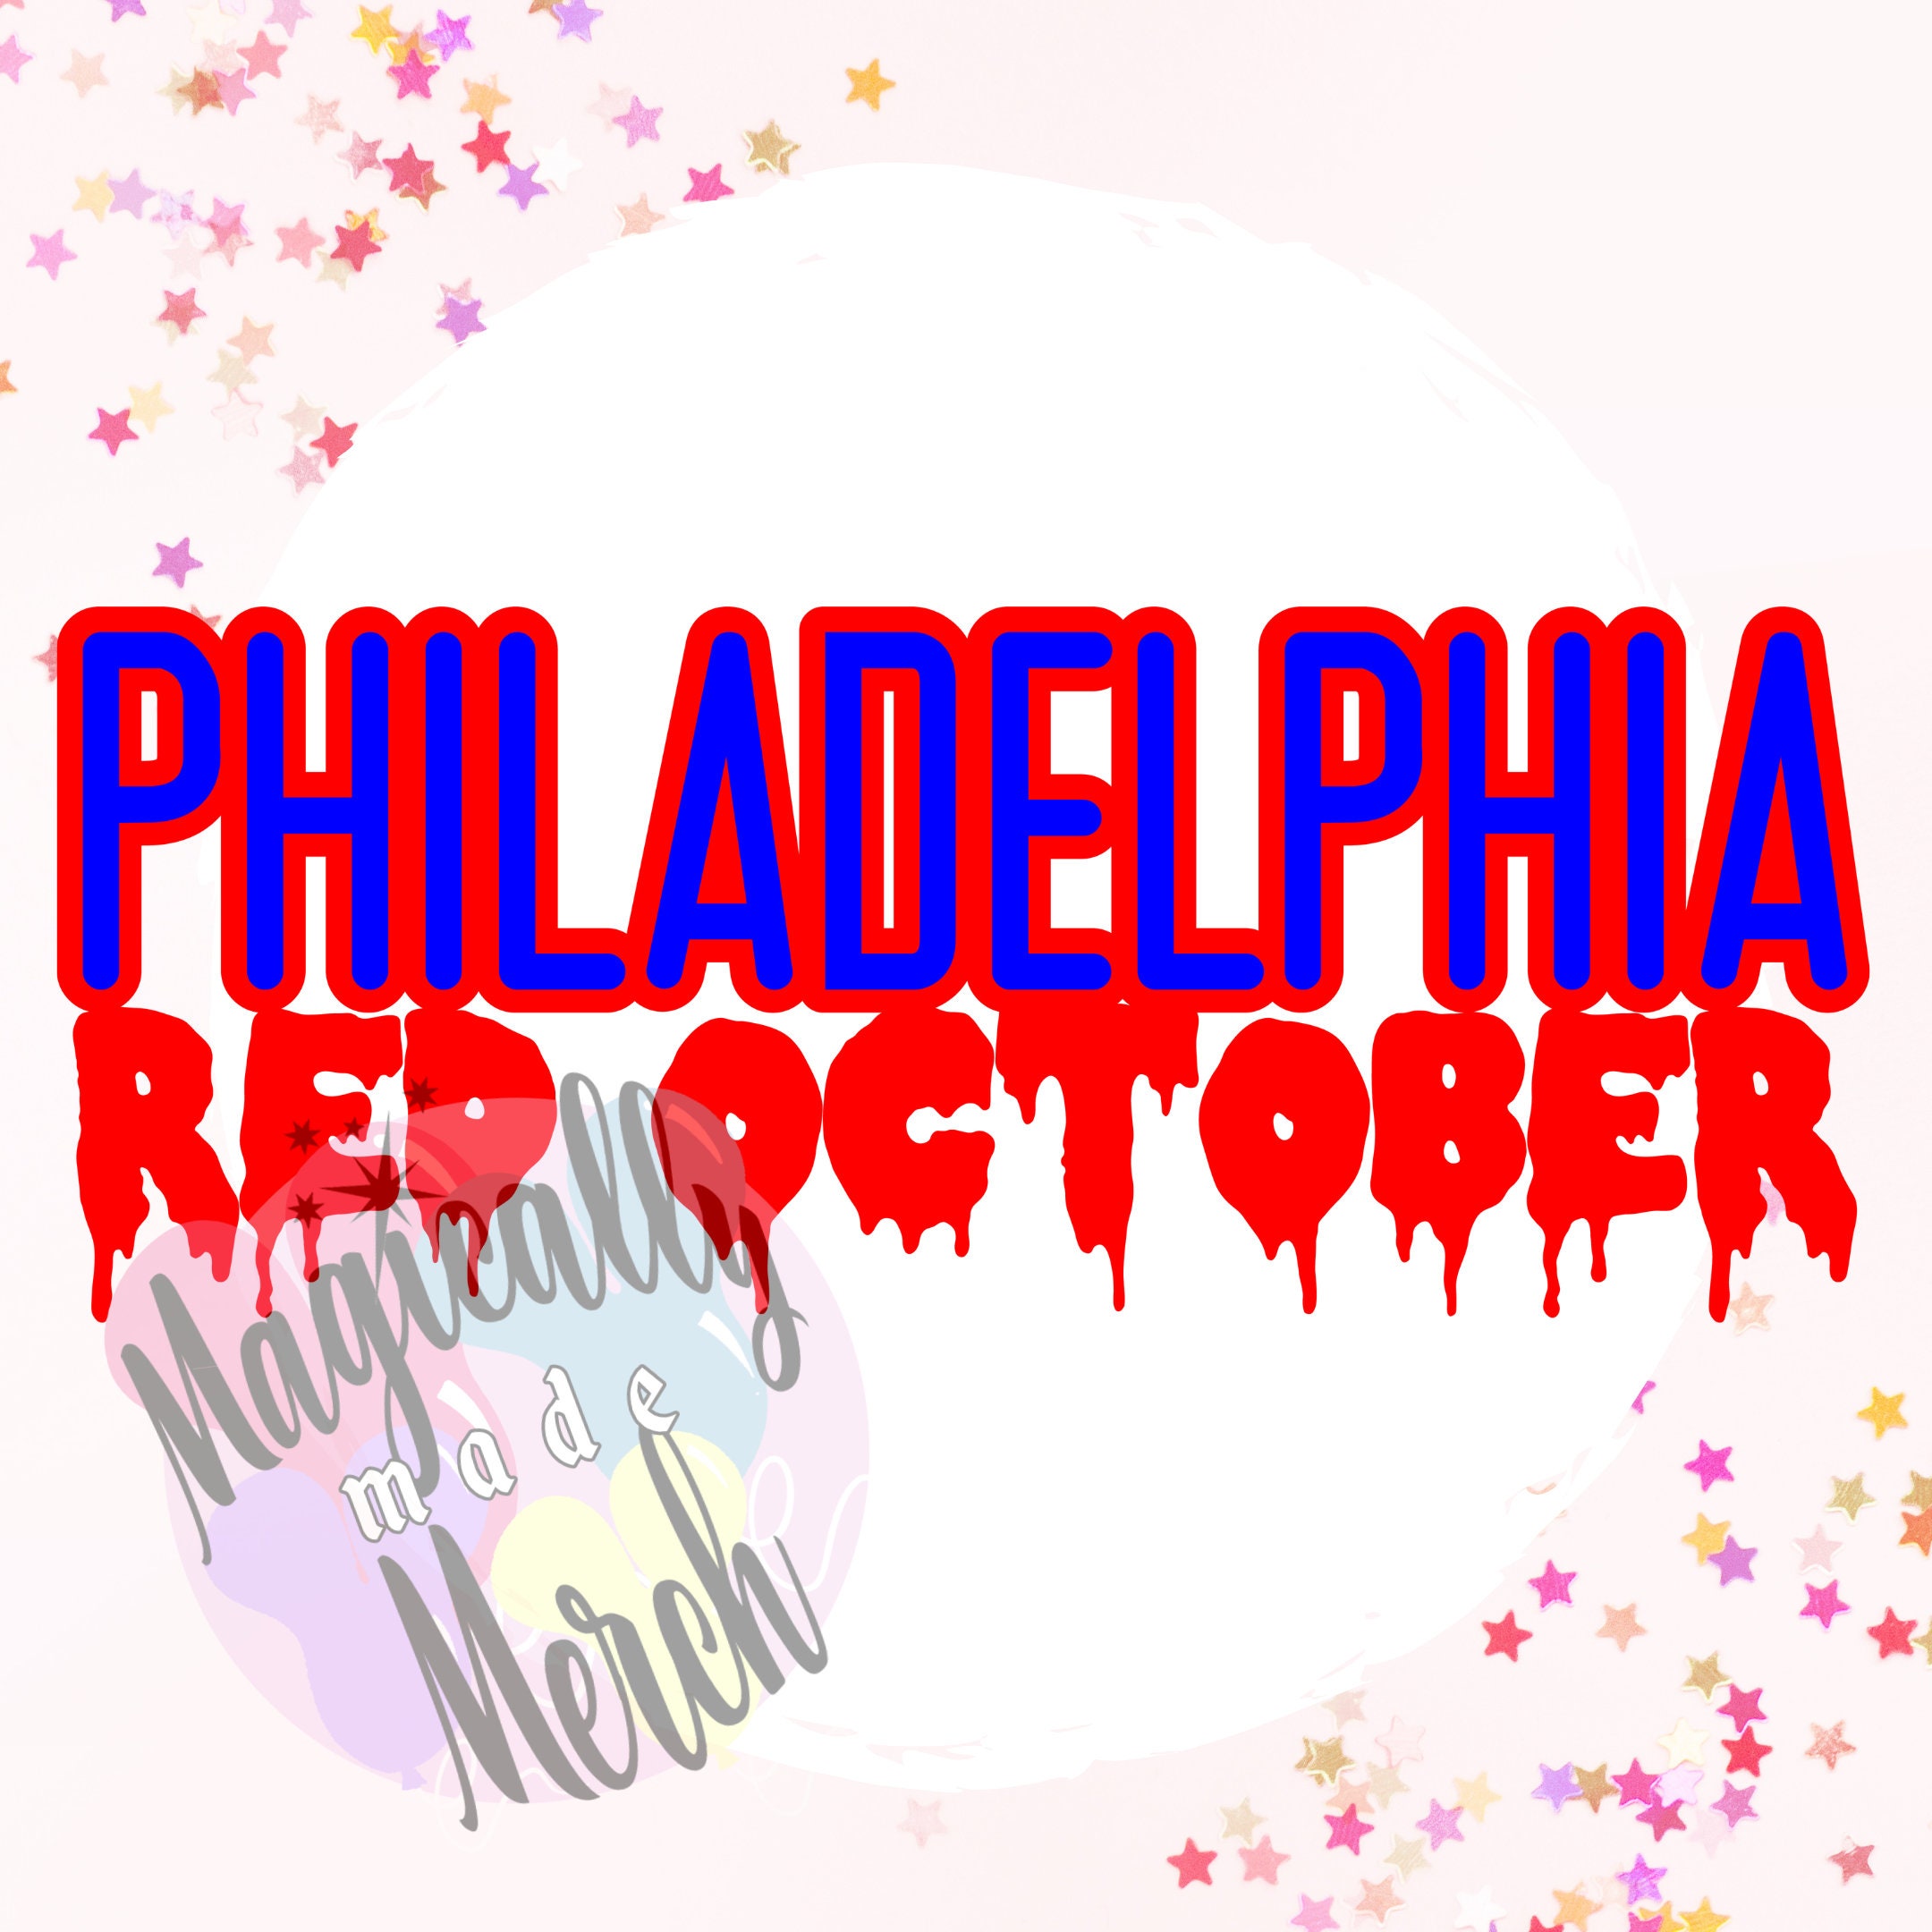 Red October Philly T-Shirt - Philadelphia Phillies - Skullridding